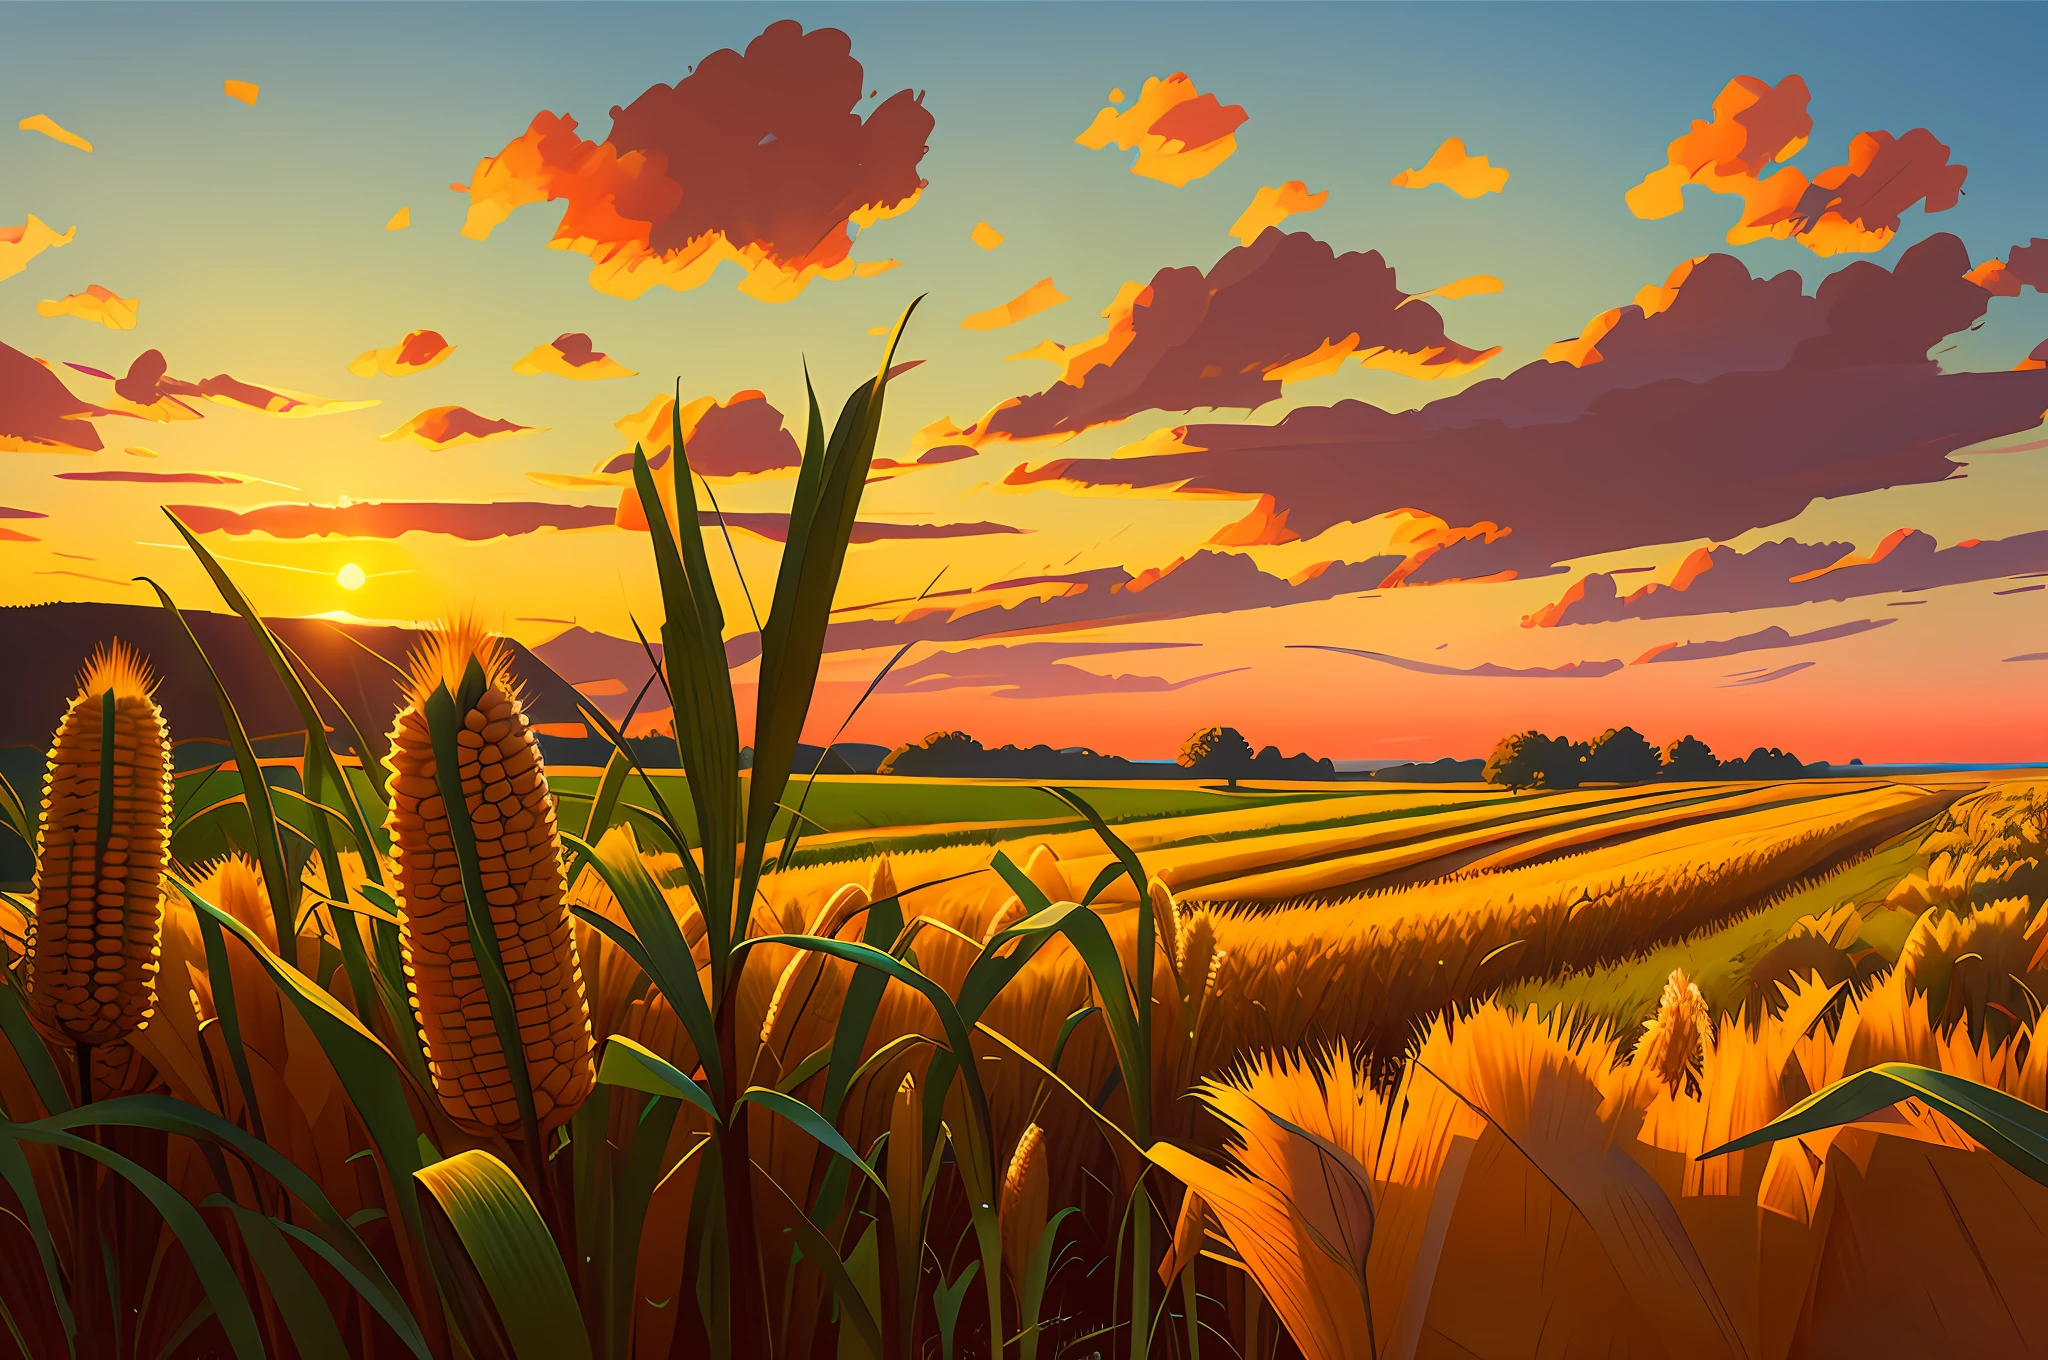 전경에 곡물이 있는 옥수수 밭, 늦여름, 아름다운 색깔의 하늘, 날카로운 거친 브러시 스트로크를 사용한 초현실적인 디지털 컨셉 아트. 에드워드 호퍼와 픽사 스타일의 컨셉 아트.